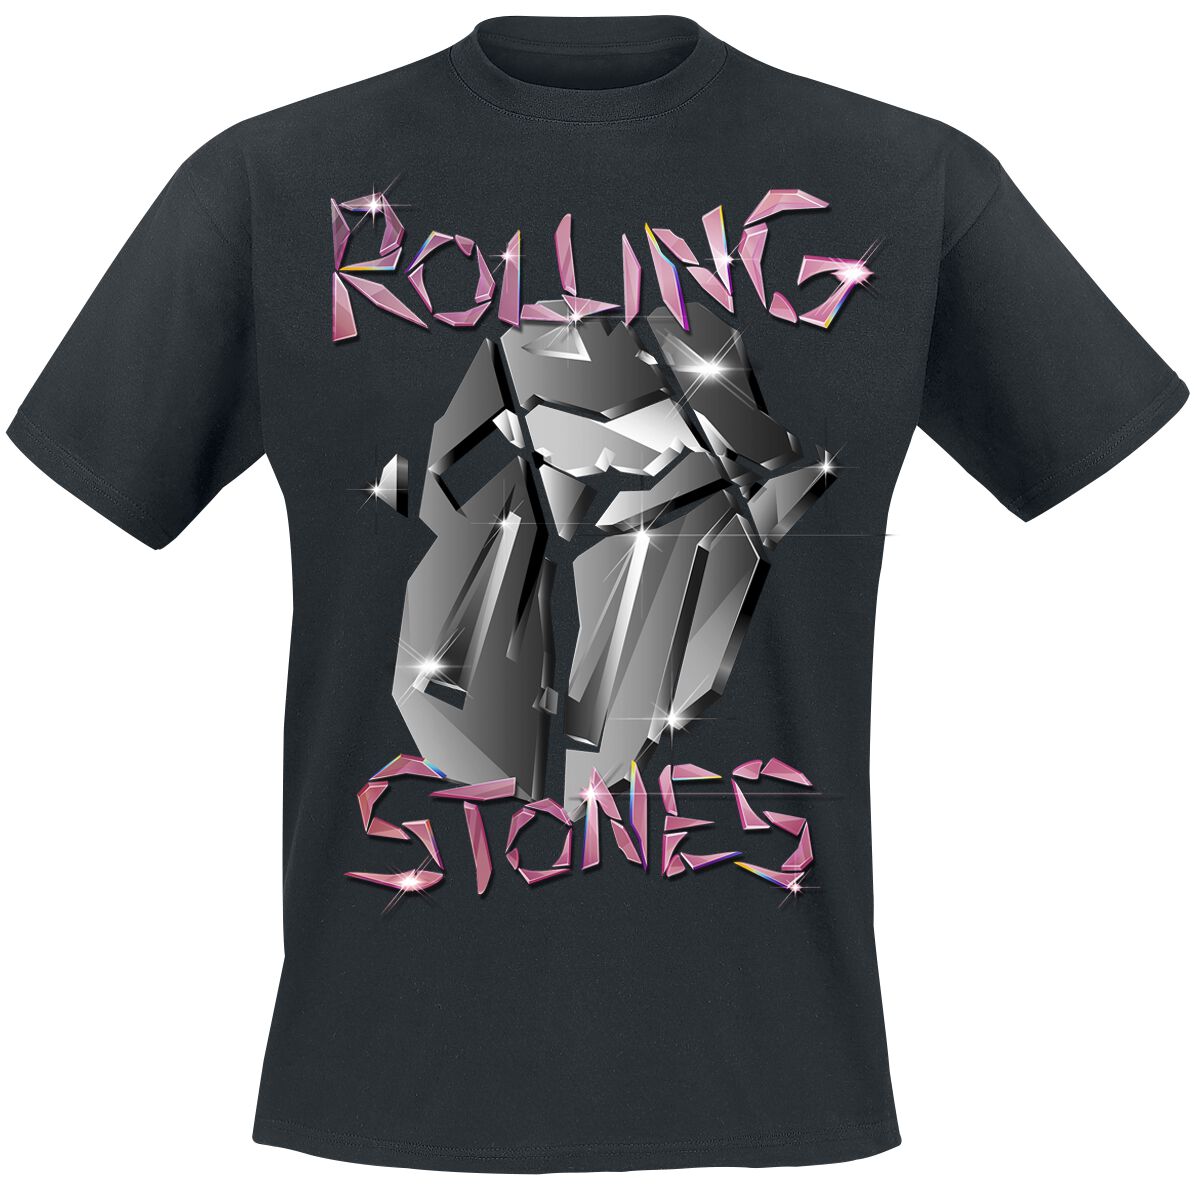 The Rolling Stones T-Shirt - Pop Up Tour Germany - Exclusive T-Shirt - S bis 3XL - für Männer - Größe 3XL - schwarz  - EMP exklusives Merchandise!